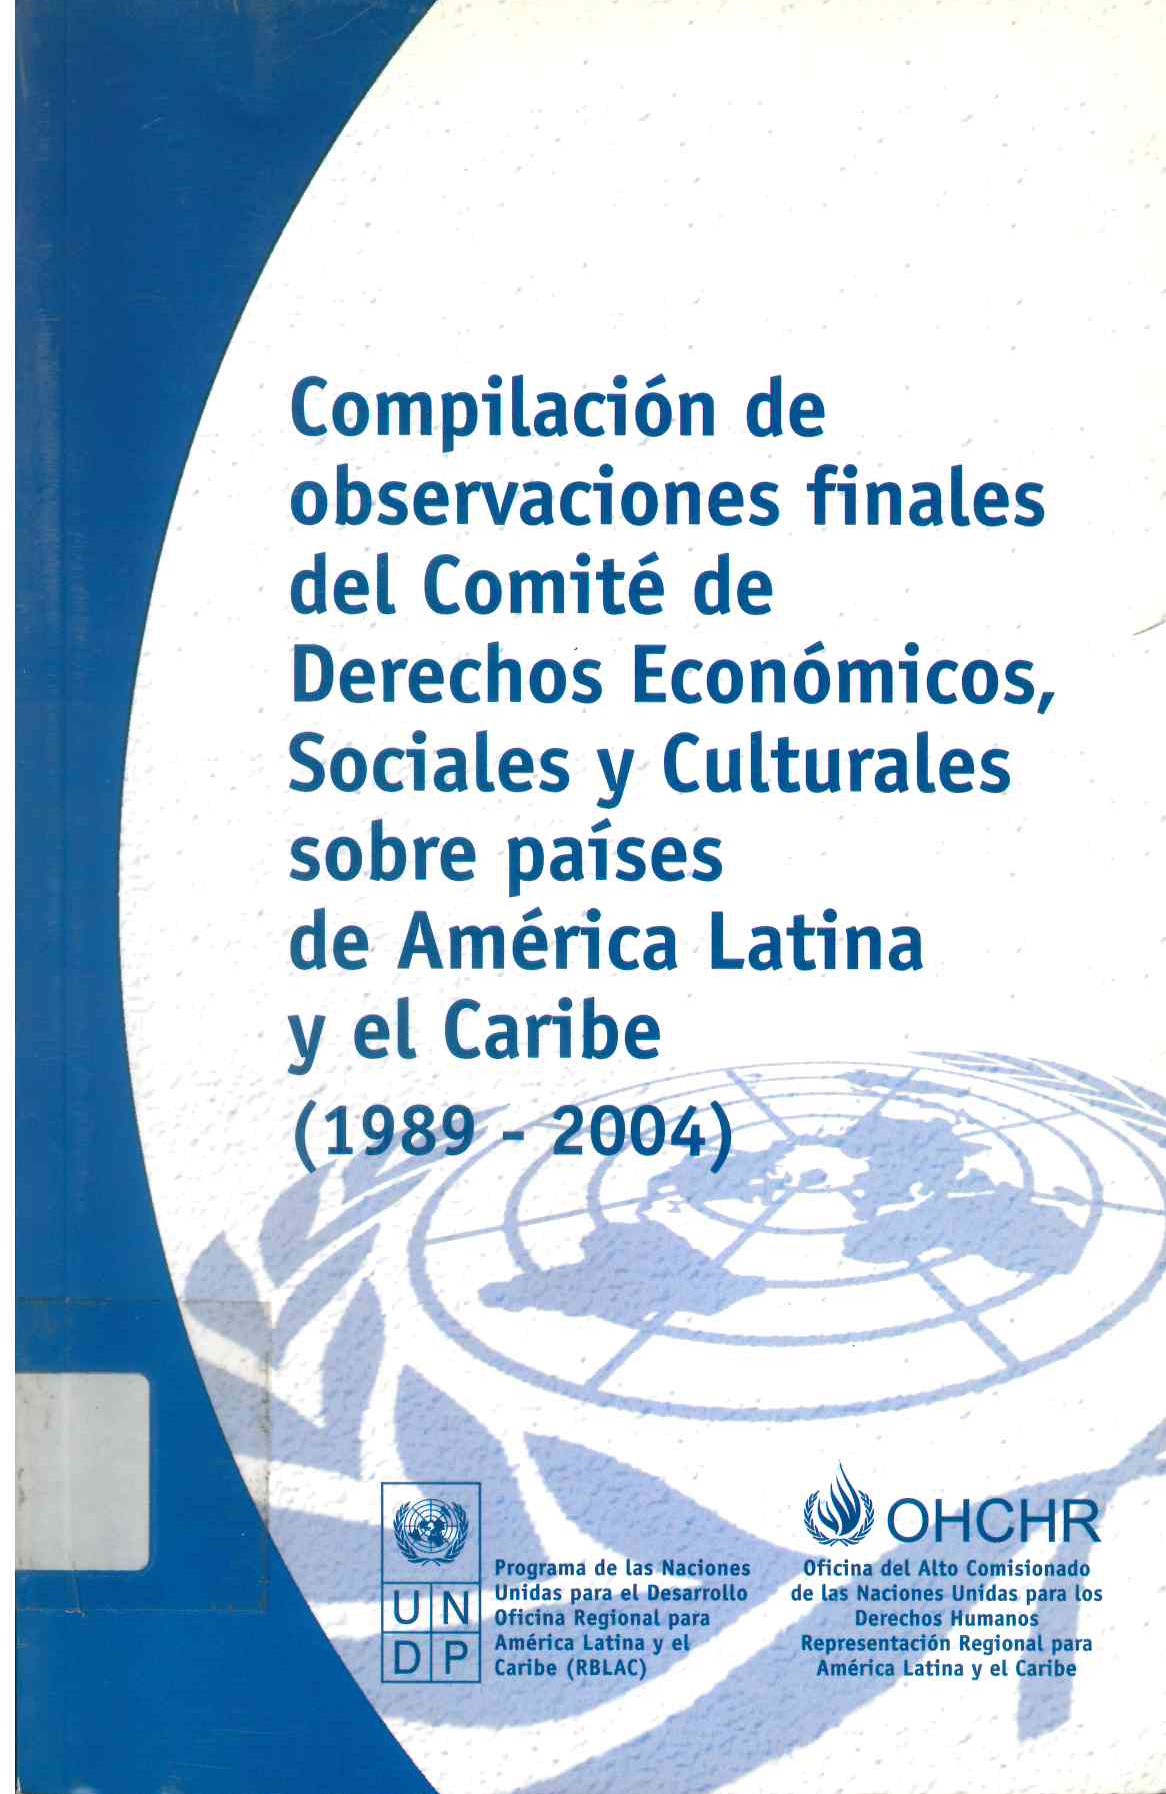 Compilación de observaciones finales del comité de derechos económicos, sociales y culturales sobre países de América Latina y el Caribe (1989-2004)